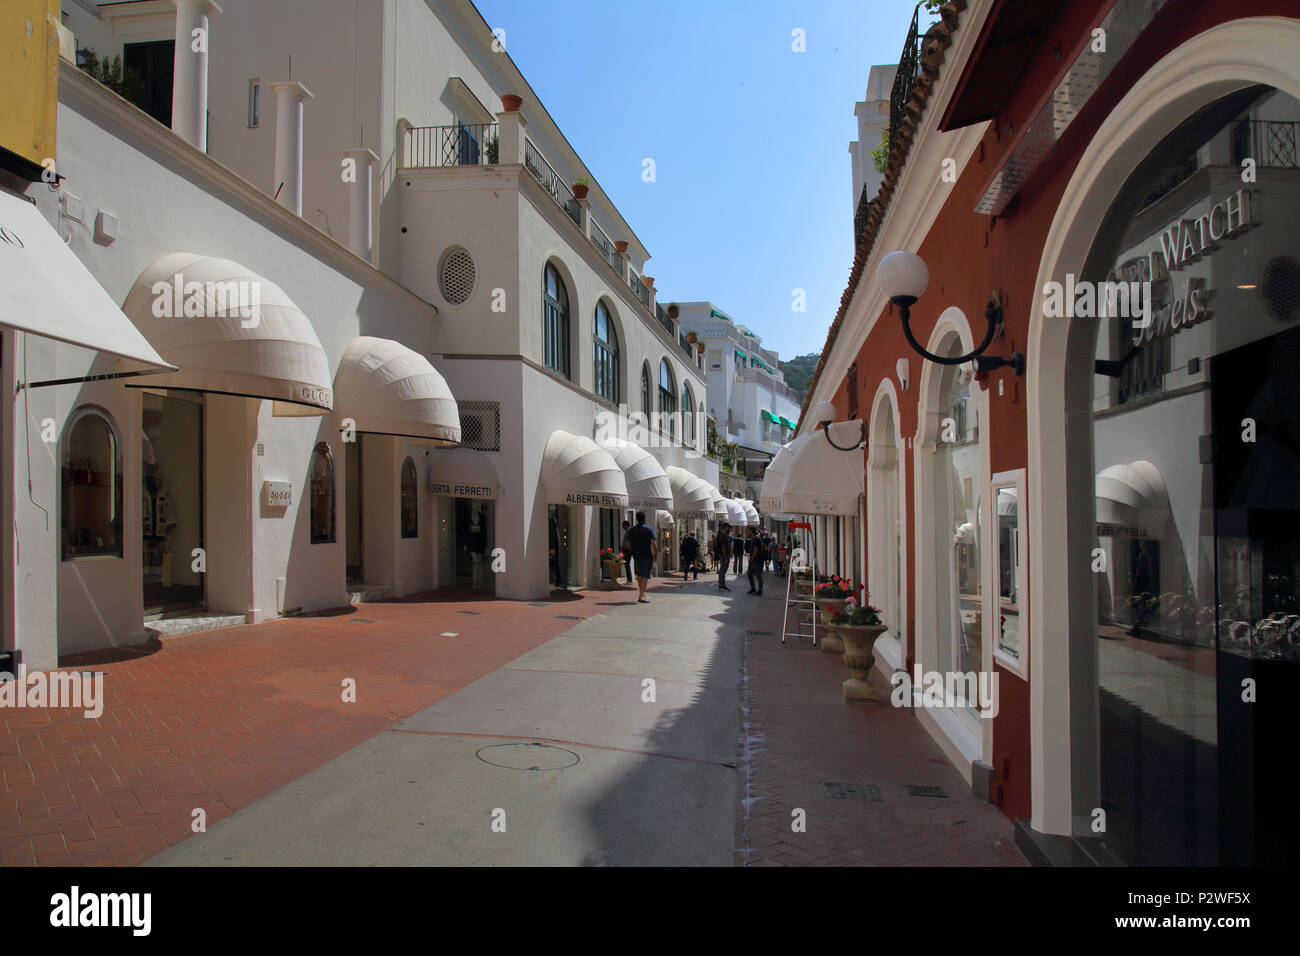 Des boutiques haut de gamme et des magasins dans la ville de Capri sur l'île de Capri, Italie Banque D'Images